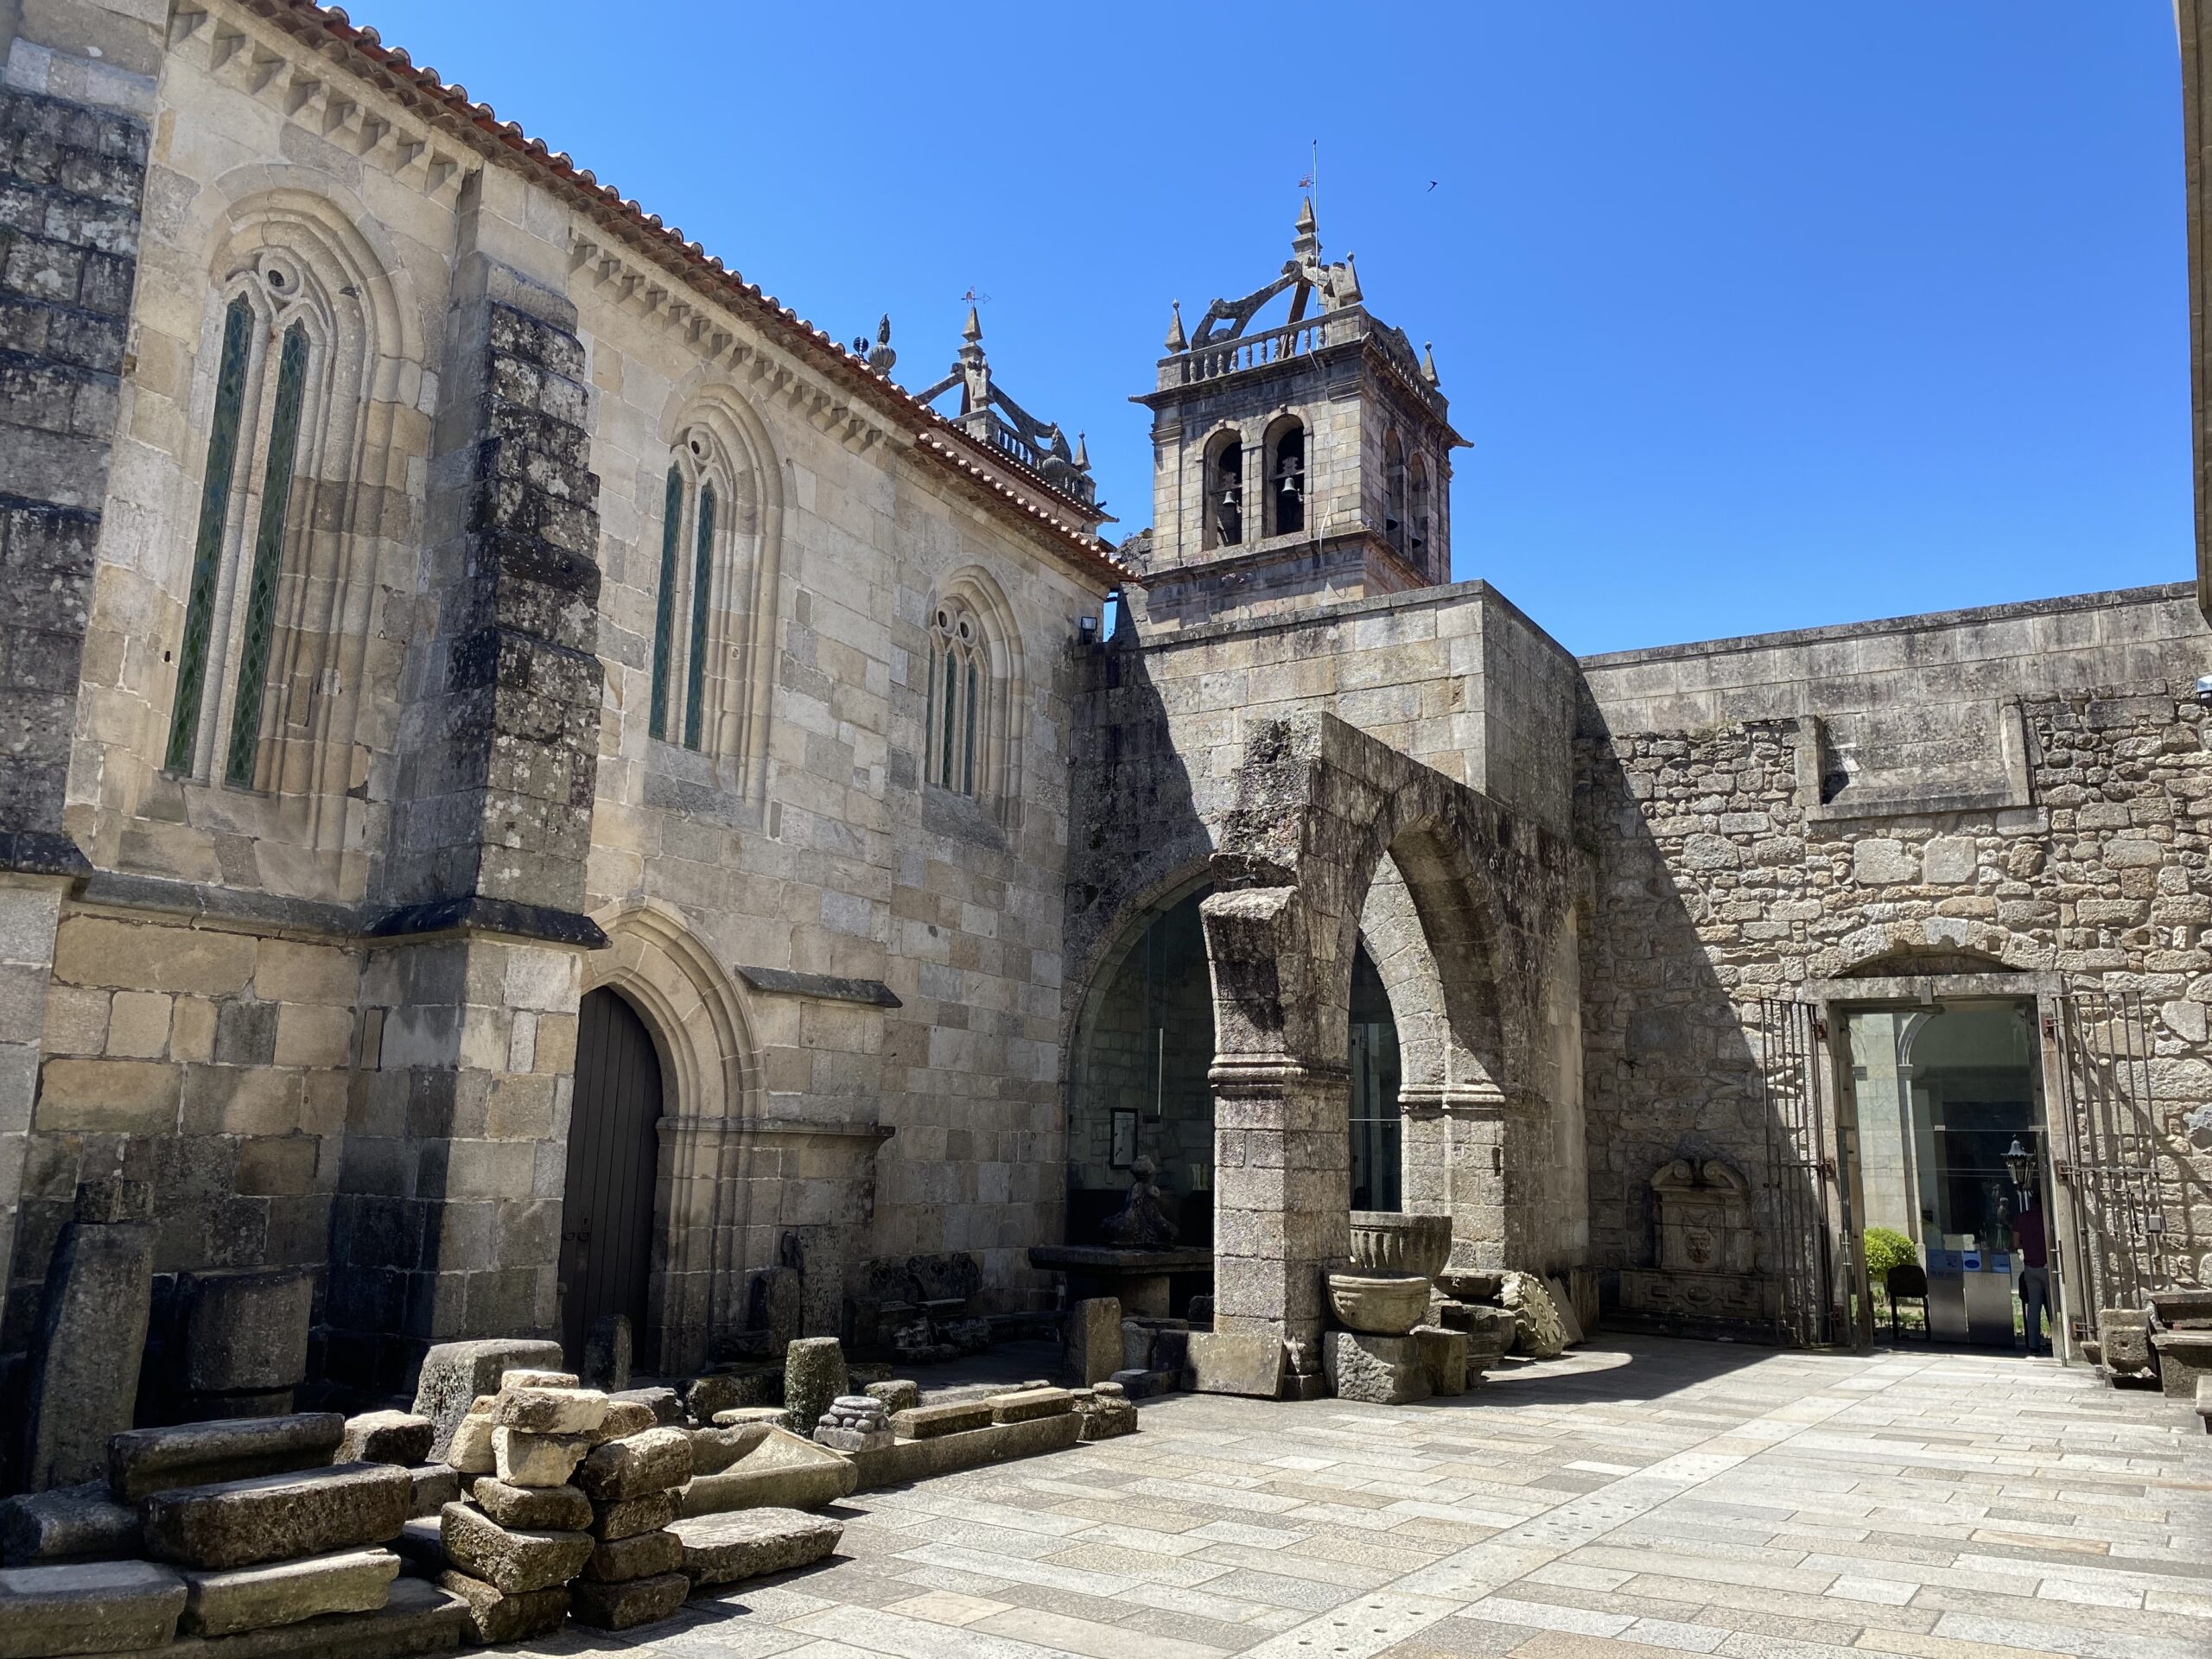 Medieval church courtyard